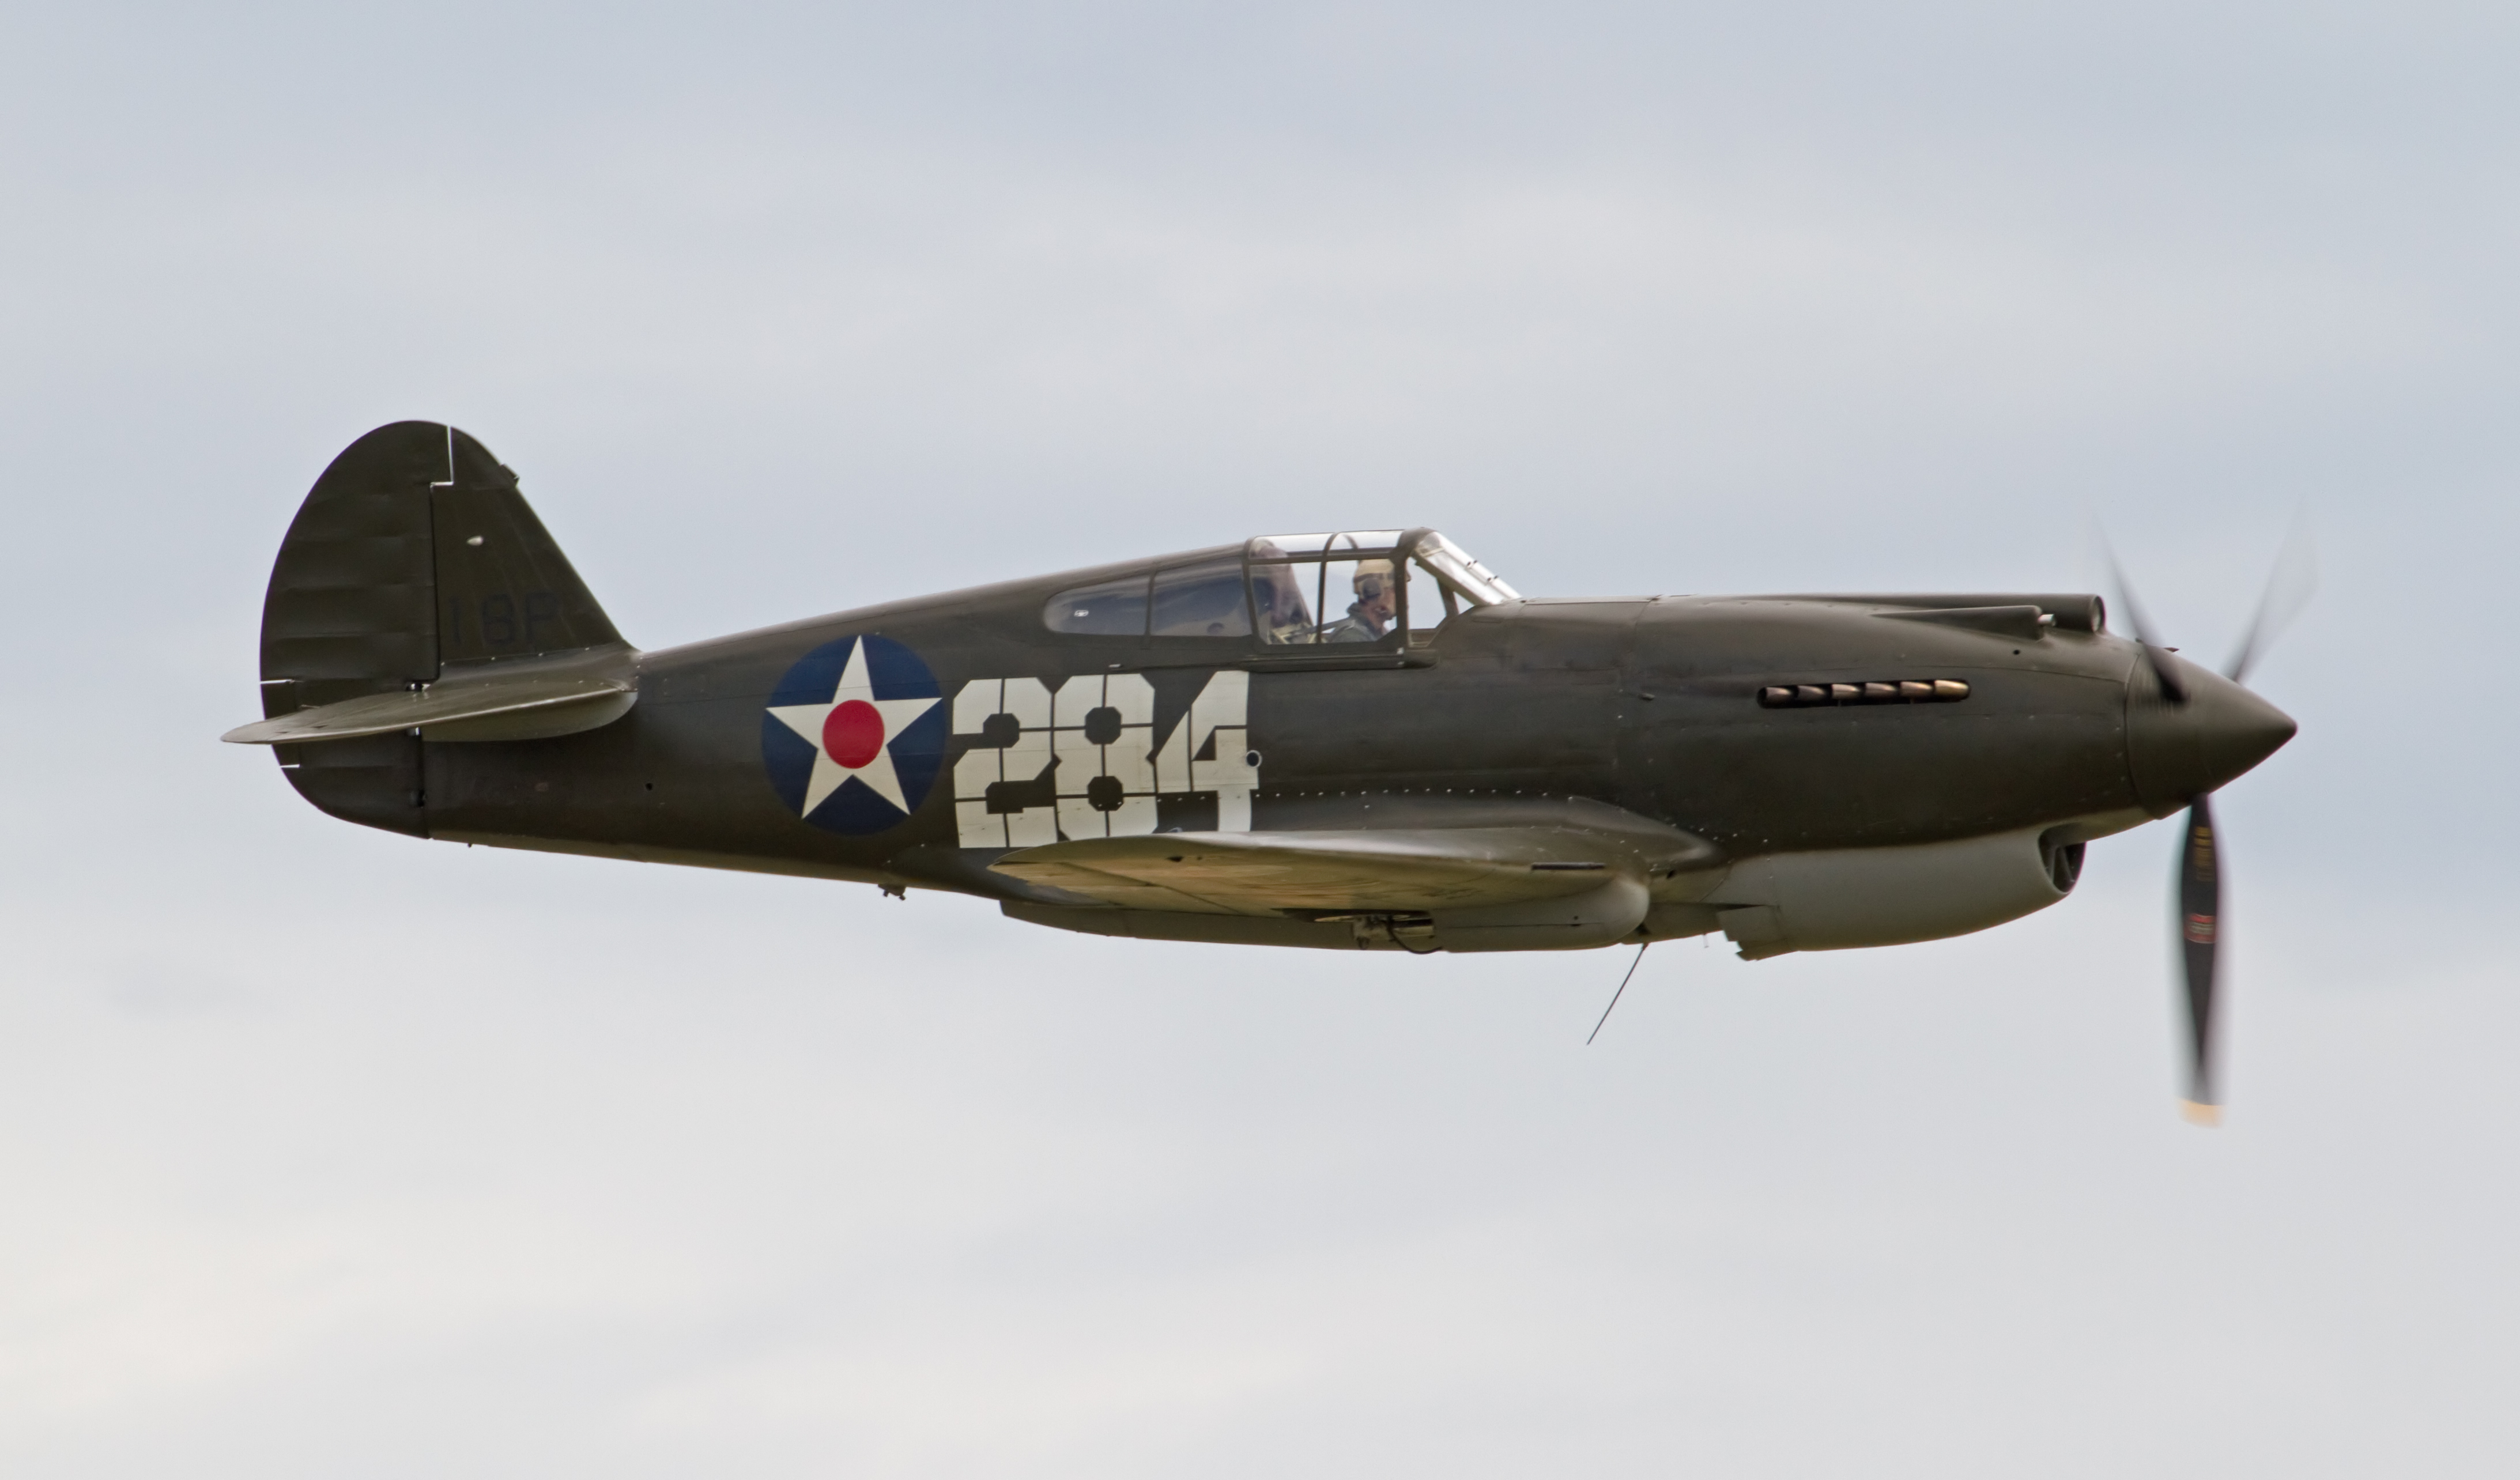 HQ Curtiss P-40 Warhawk Wallpapers | File 2993.3Kb